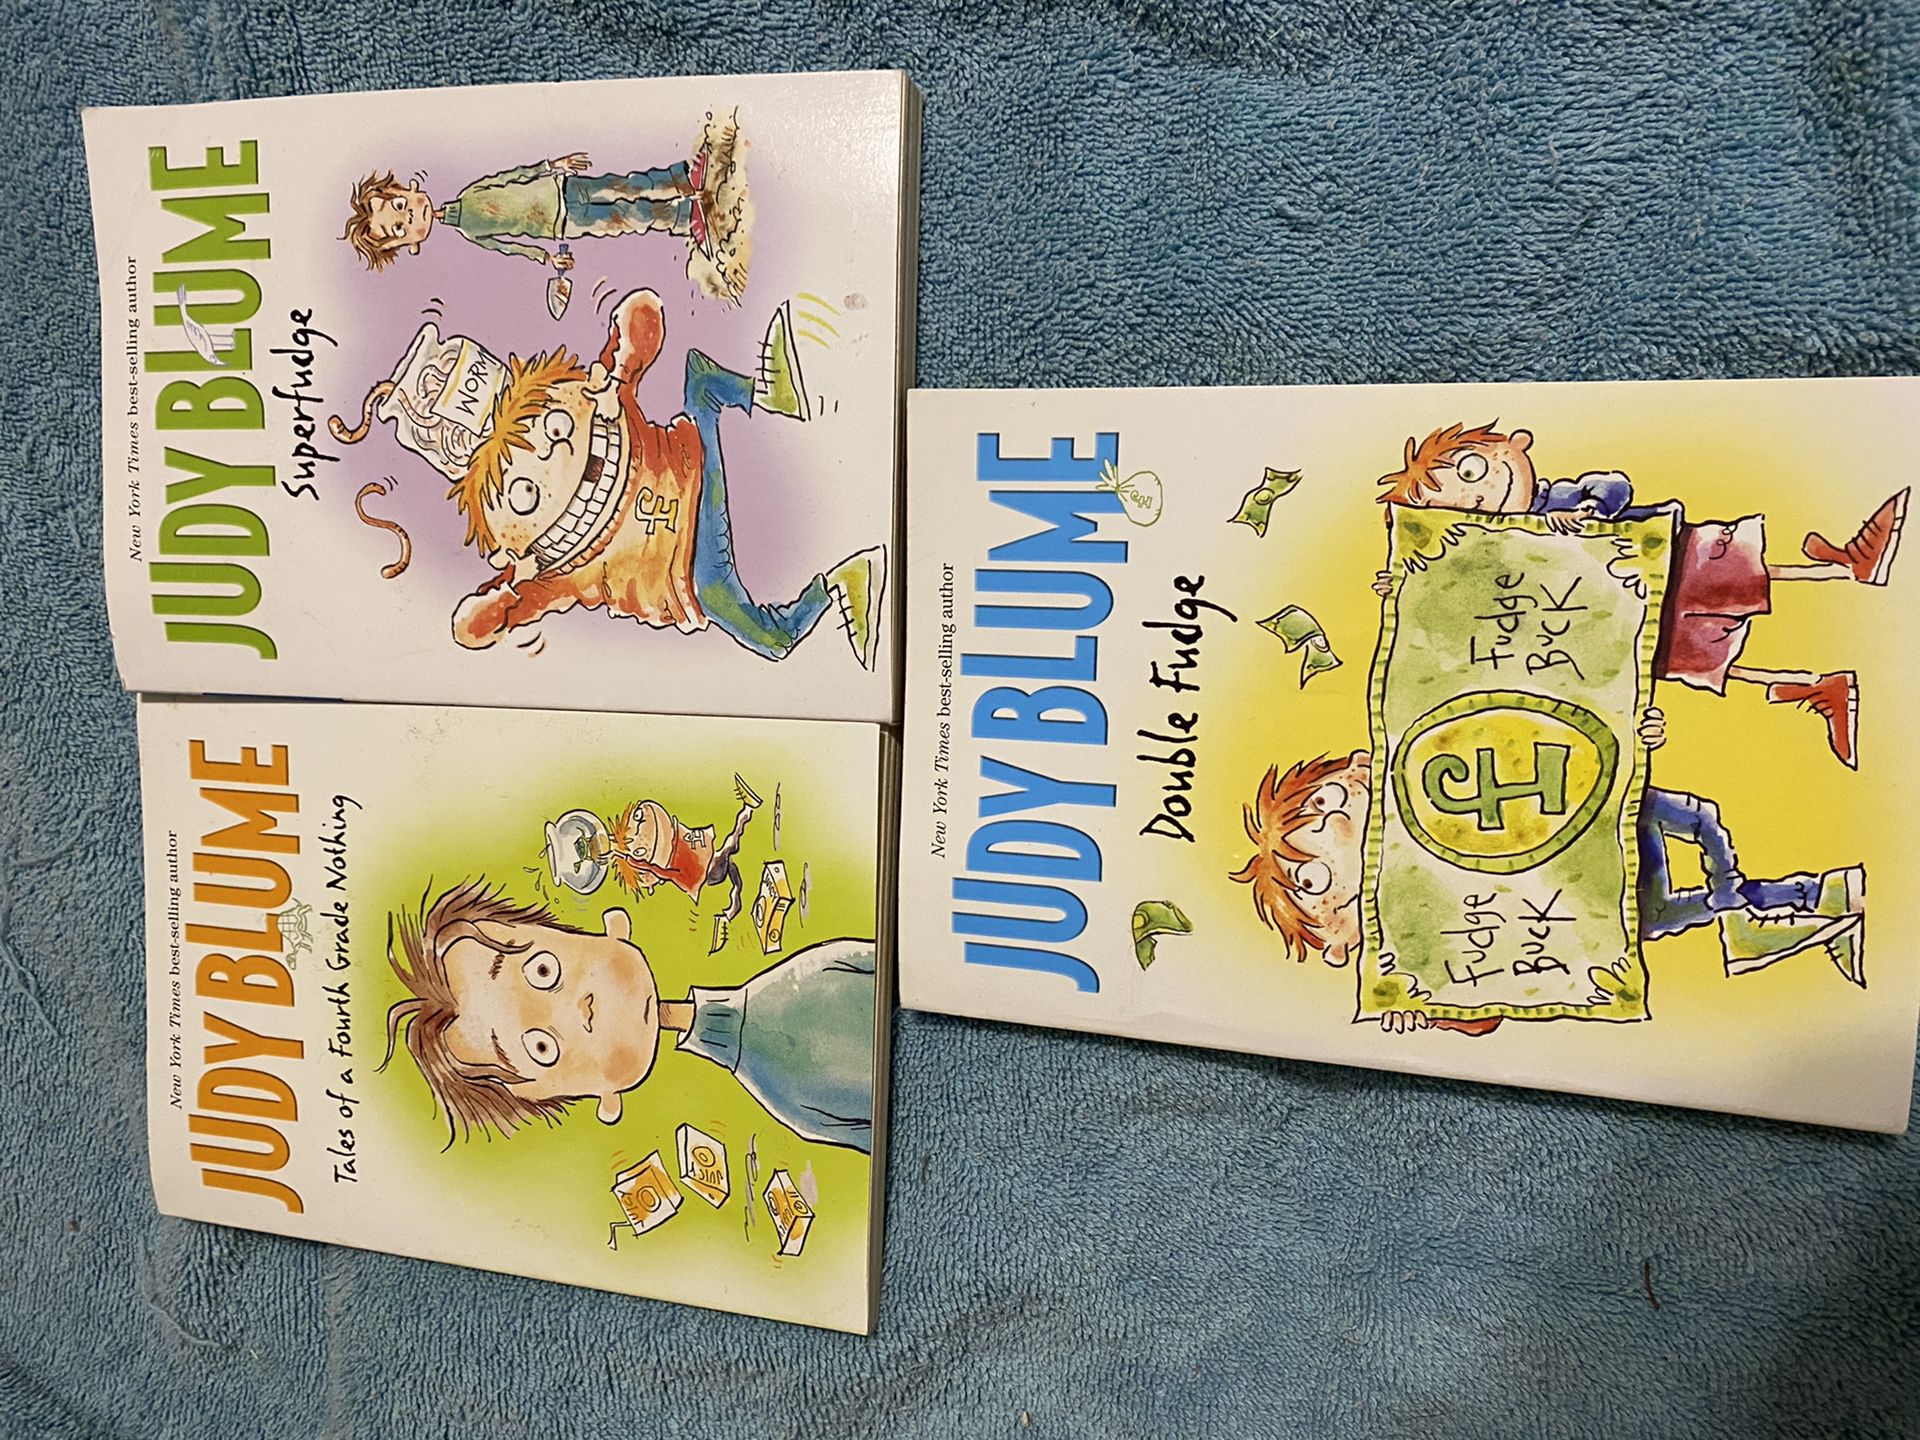 Three Judy Blume books